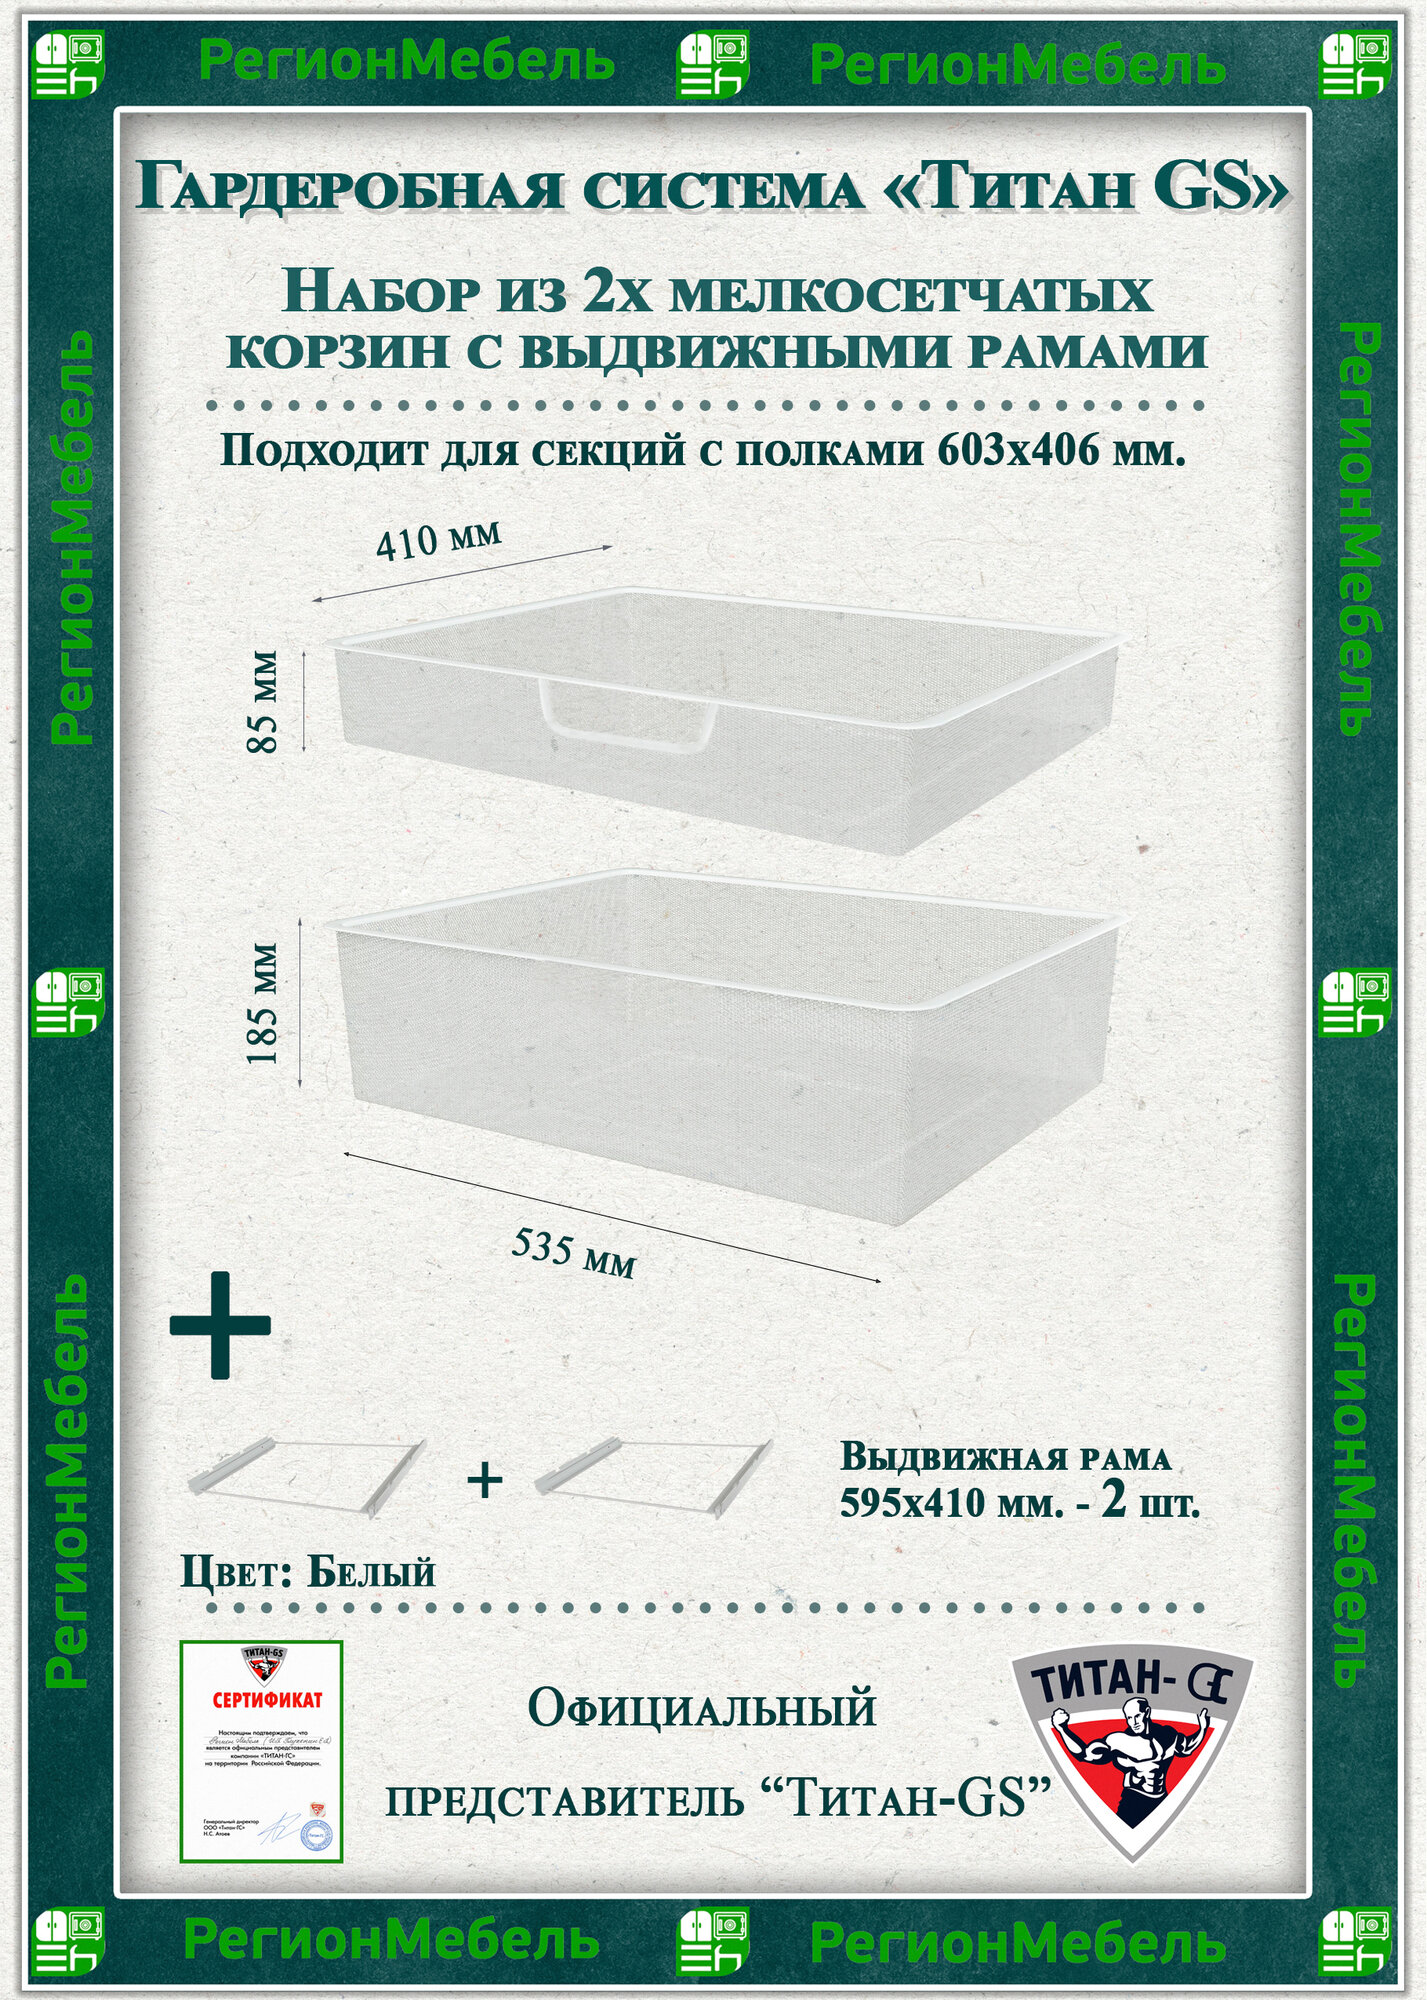 Мелкосетчатая корзина для гардеробной системы "титан-gs" Комплект-1+1 (595х410х85/185) (с рамой) Цвет: Белый